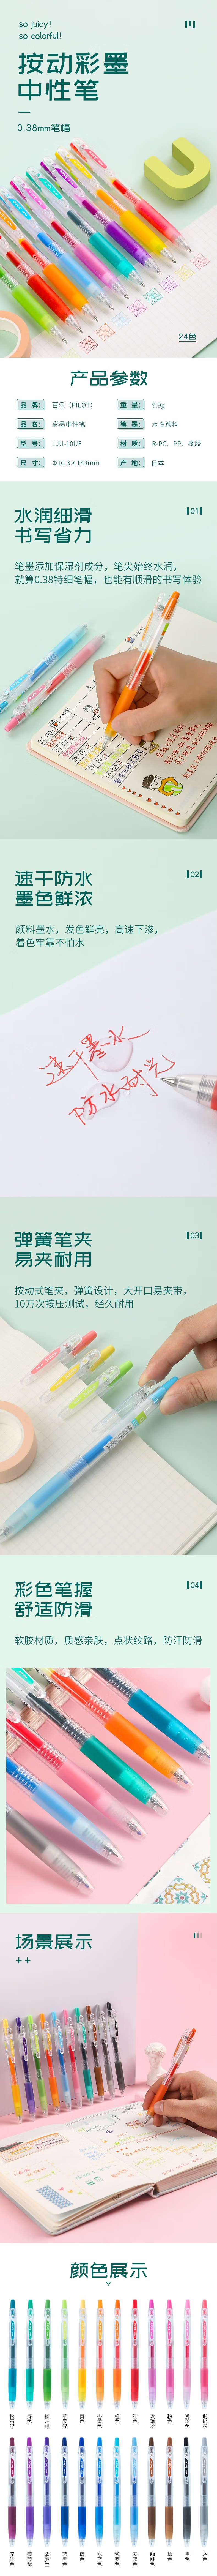 百乐Juice百果乐中性笔(啫喱笔) LJU-10UF-B 0.38mm 5支/盒